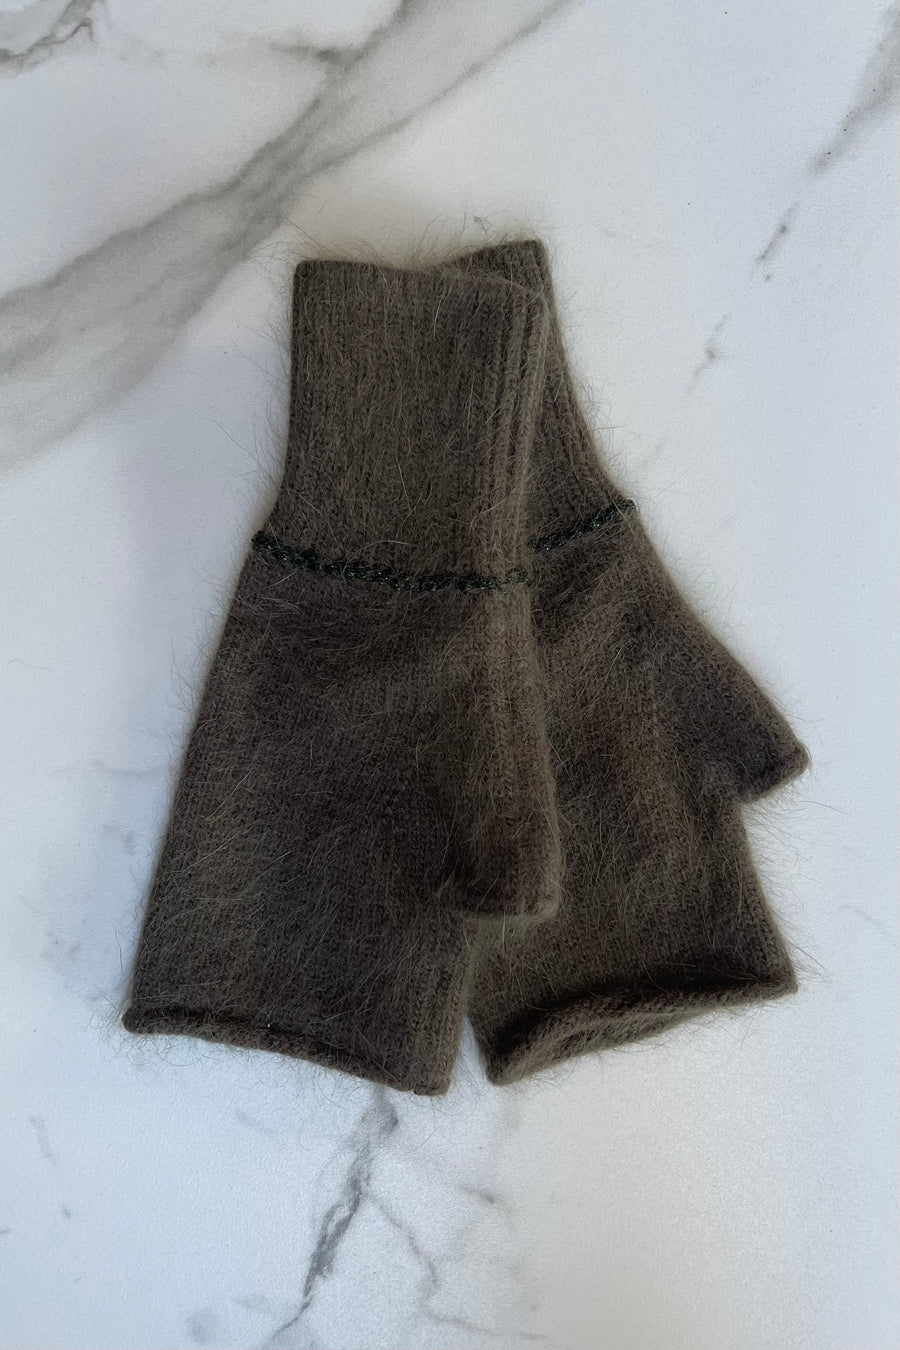 Kaki cashmere mittens, fingerless gloves 